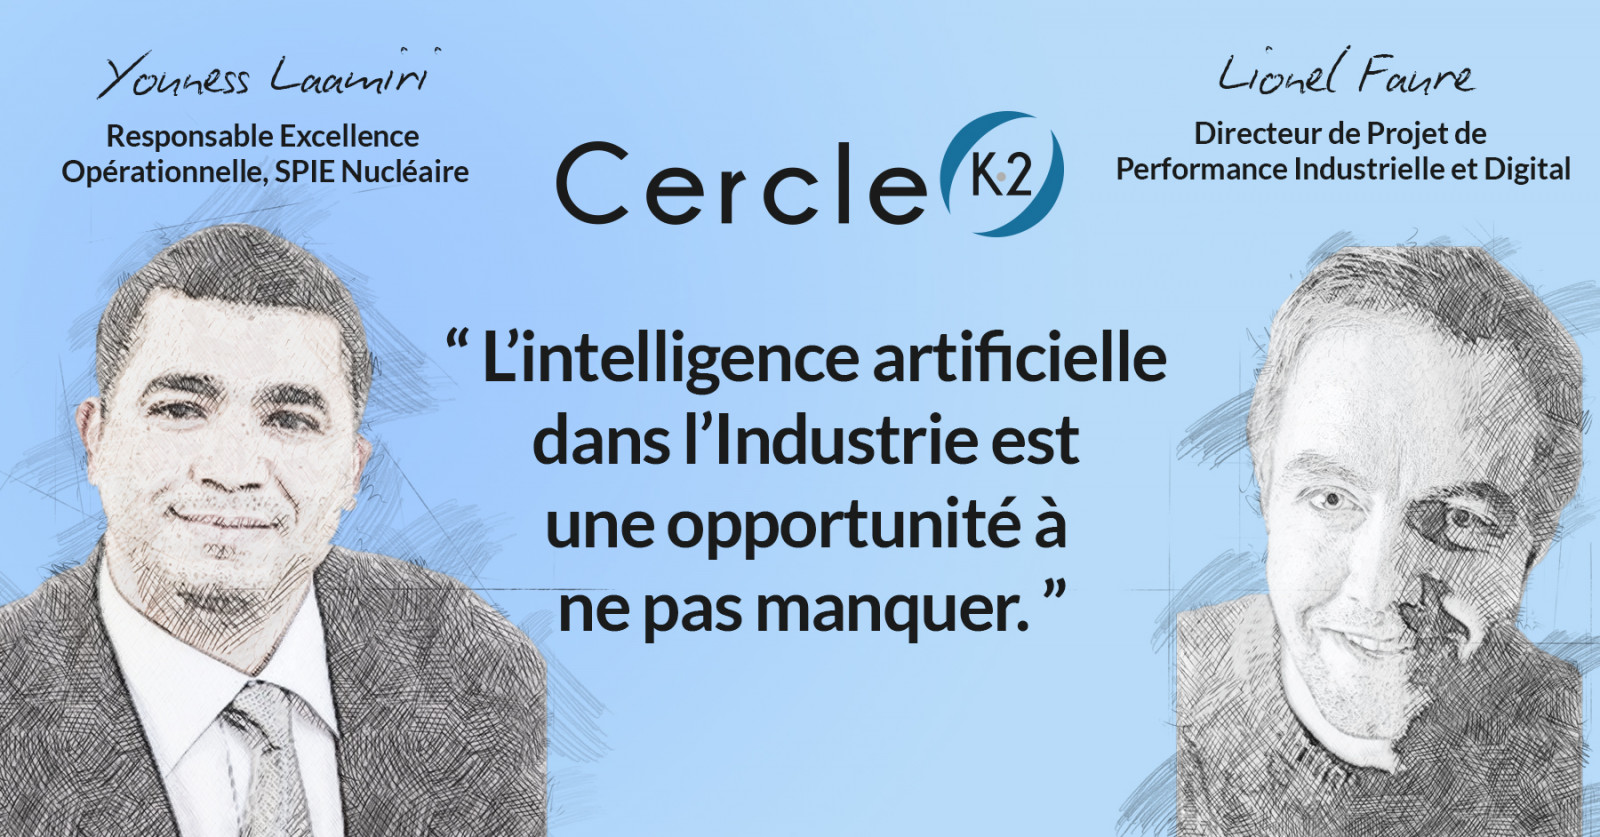 L’intelligence artificielle dans l’industrie - Cercle K2